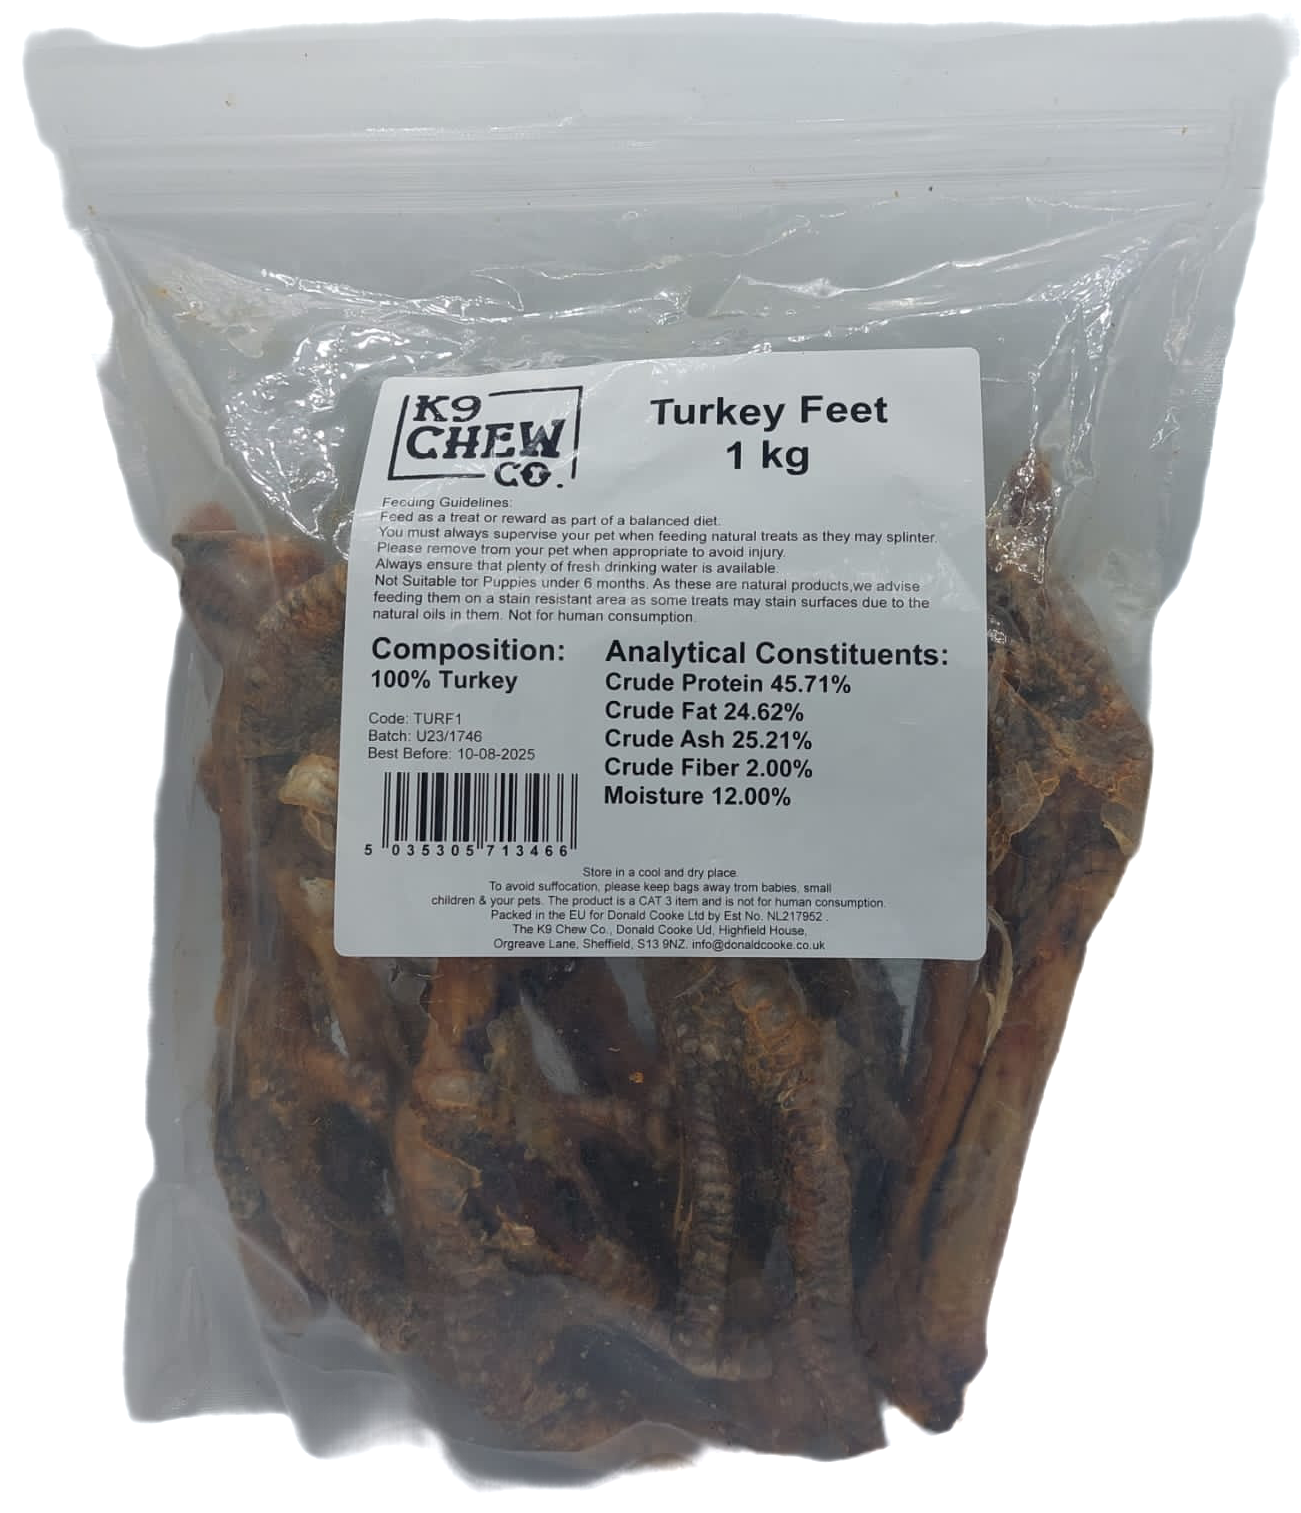 K9 Chew Co. Turkey Feet 1kg